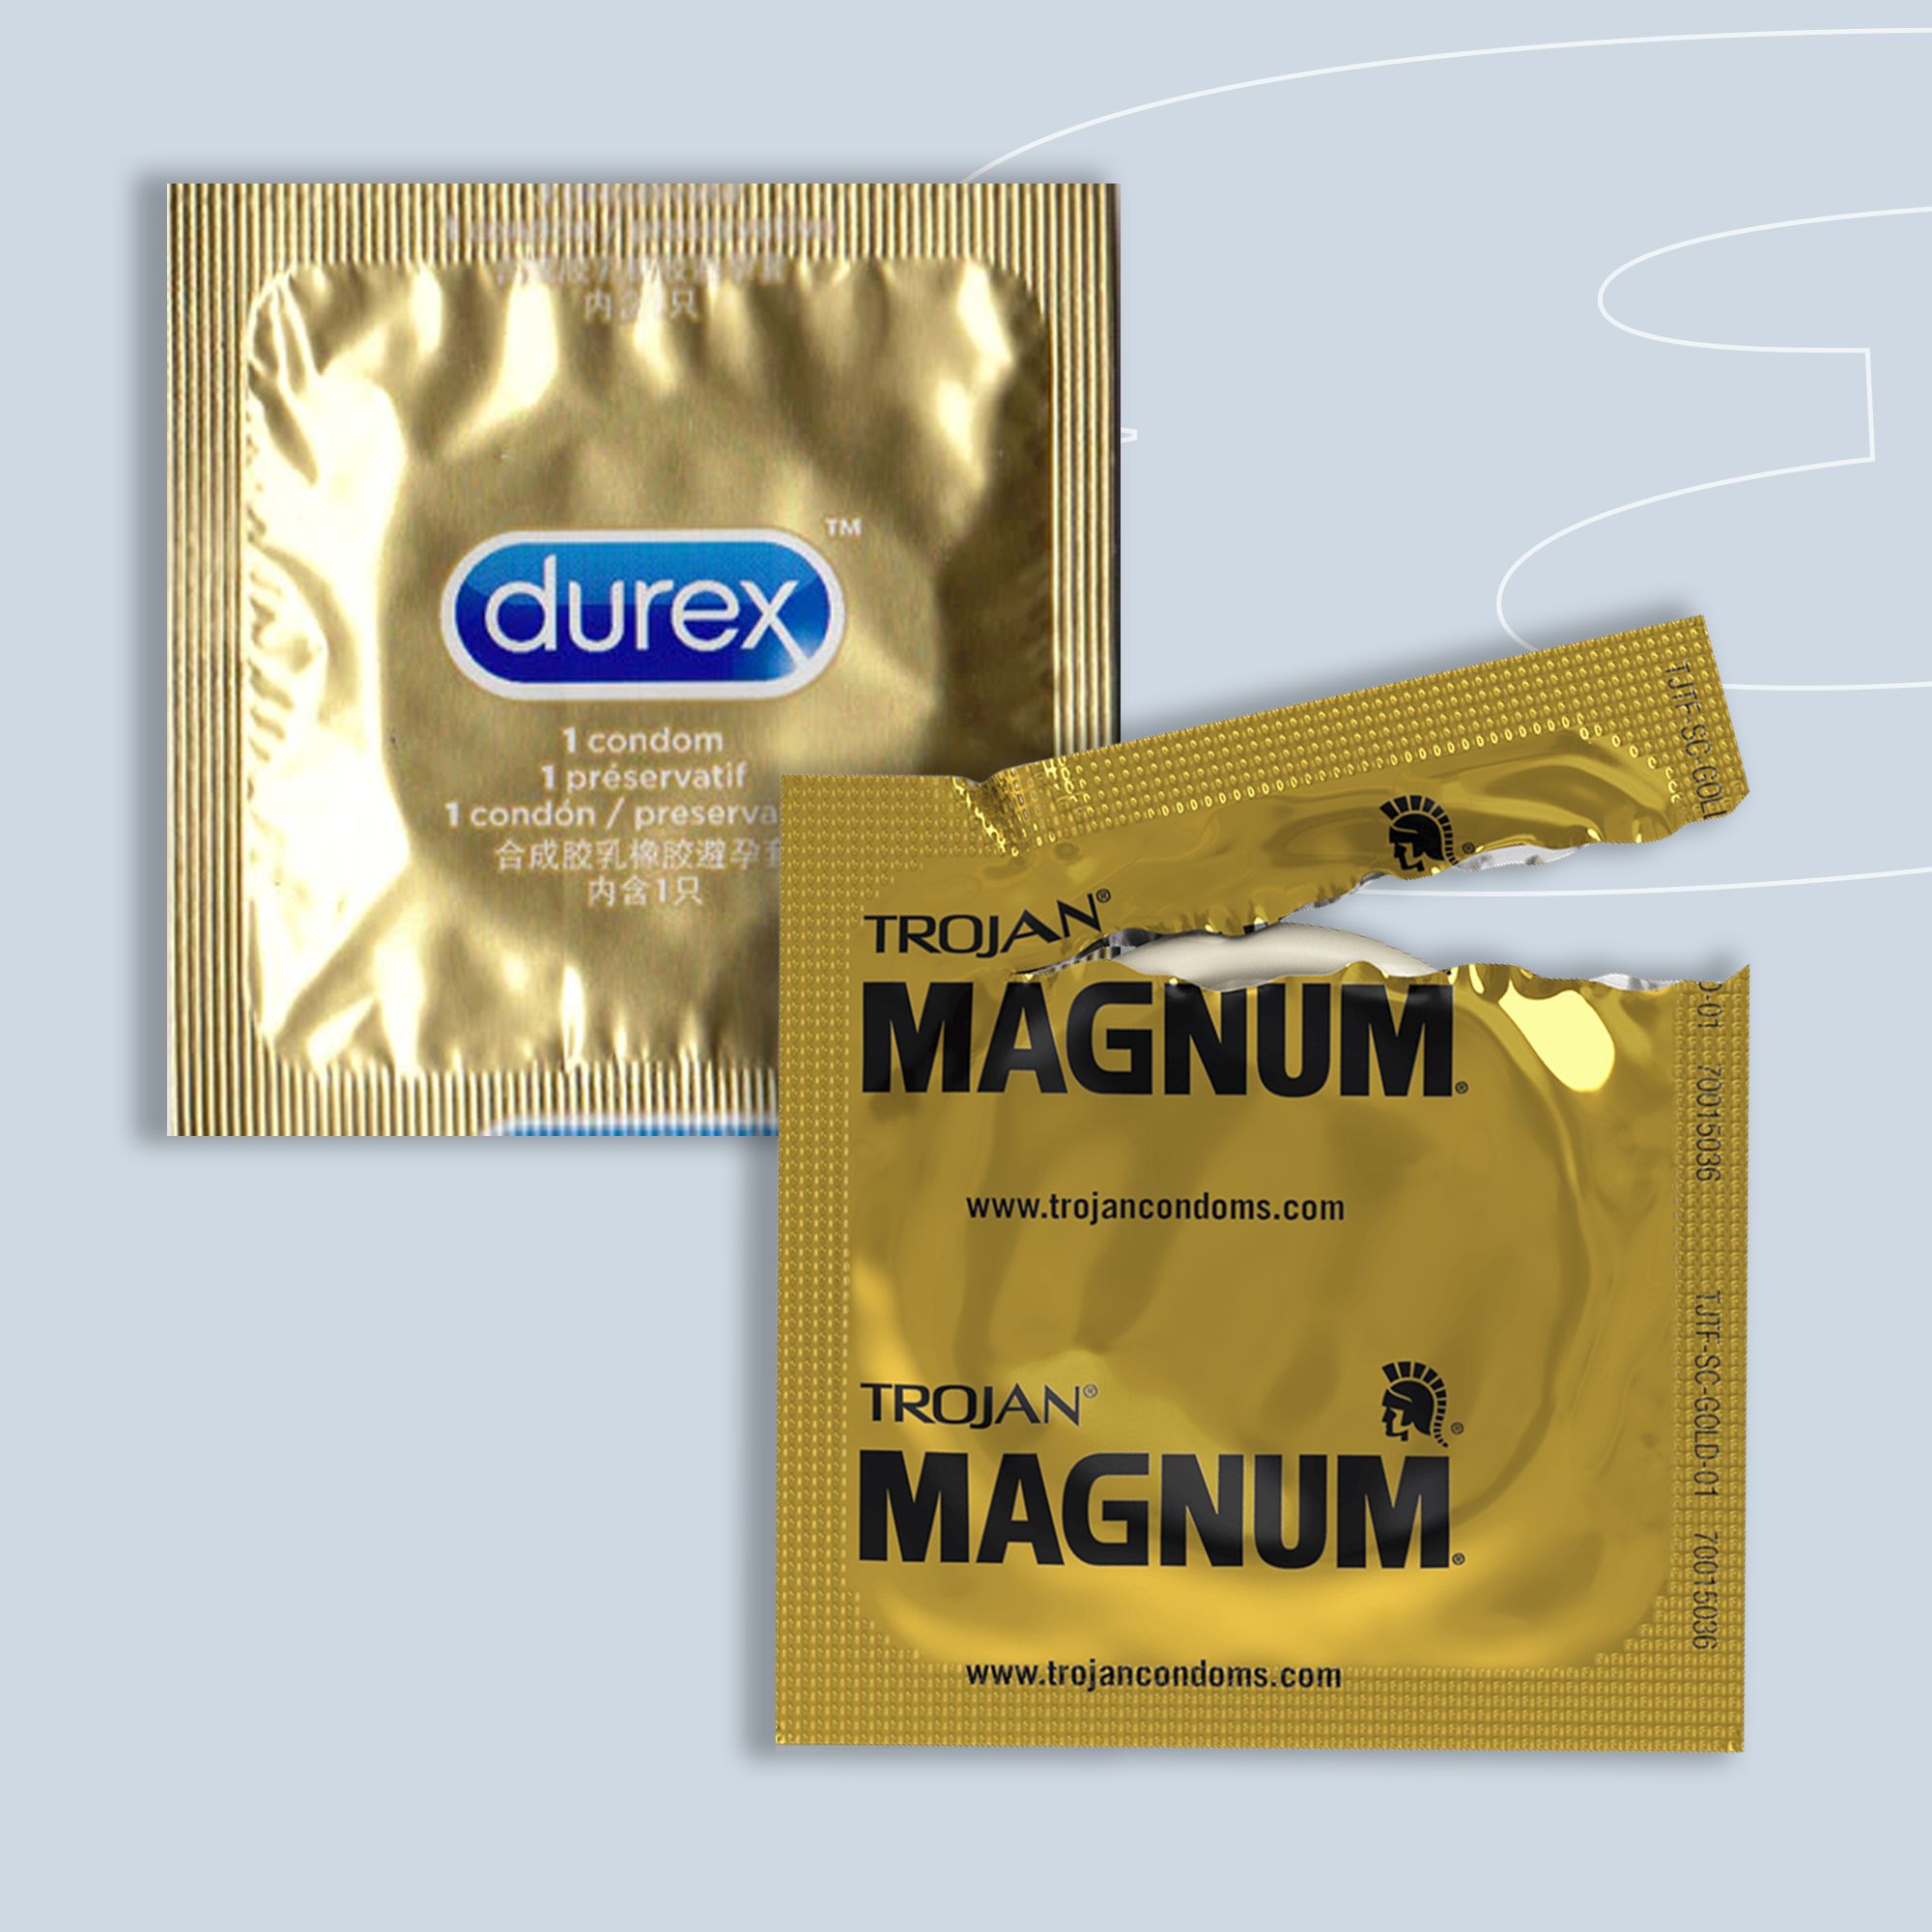 carli silva recommends trojan condoms sizes in inches pic